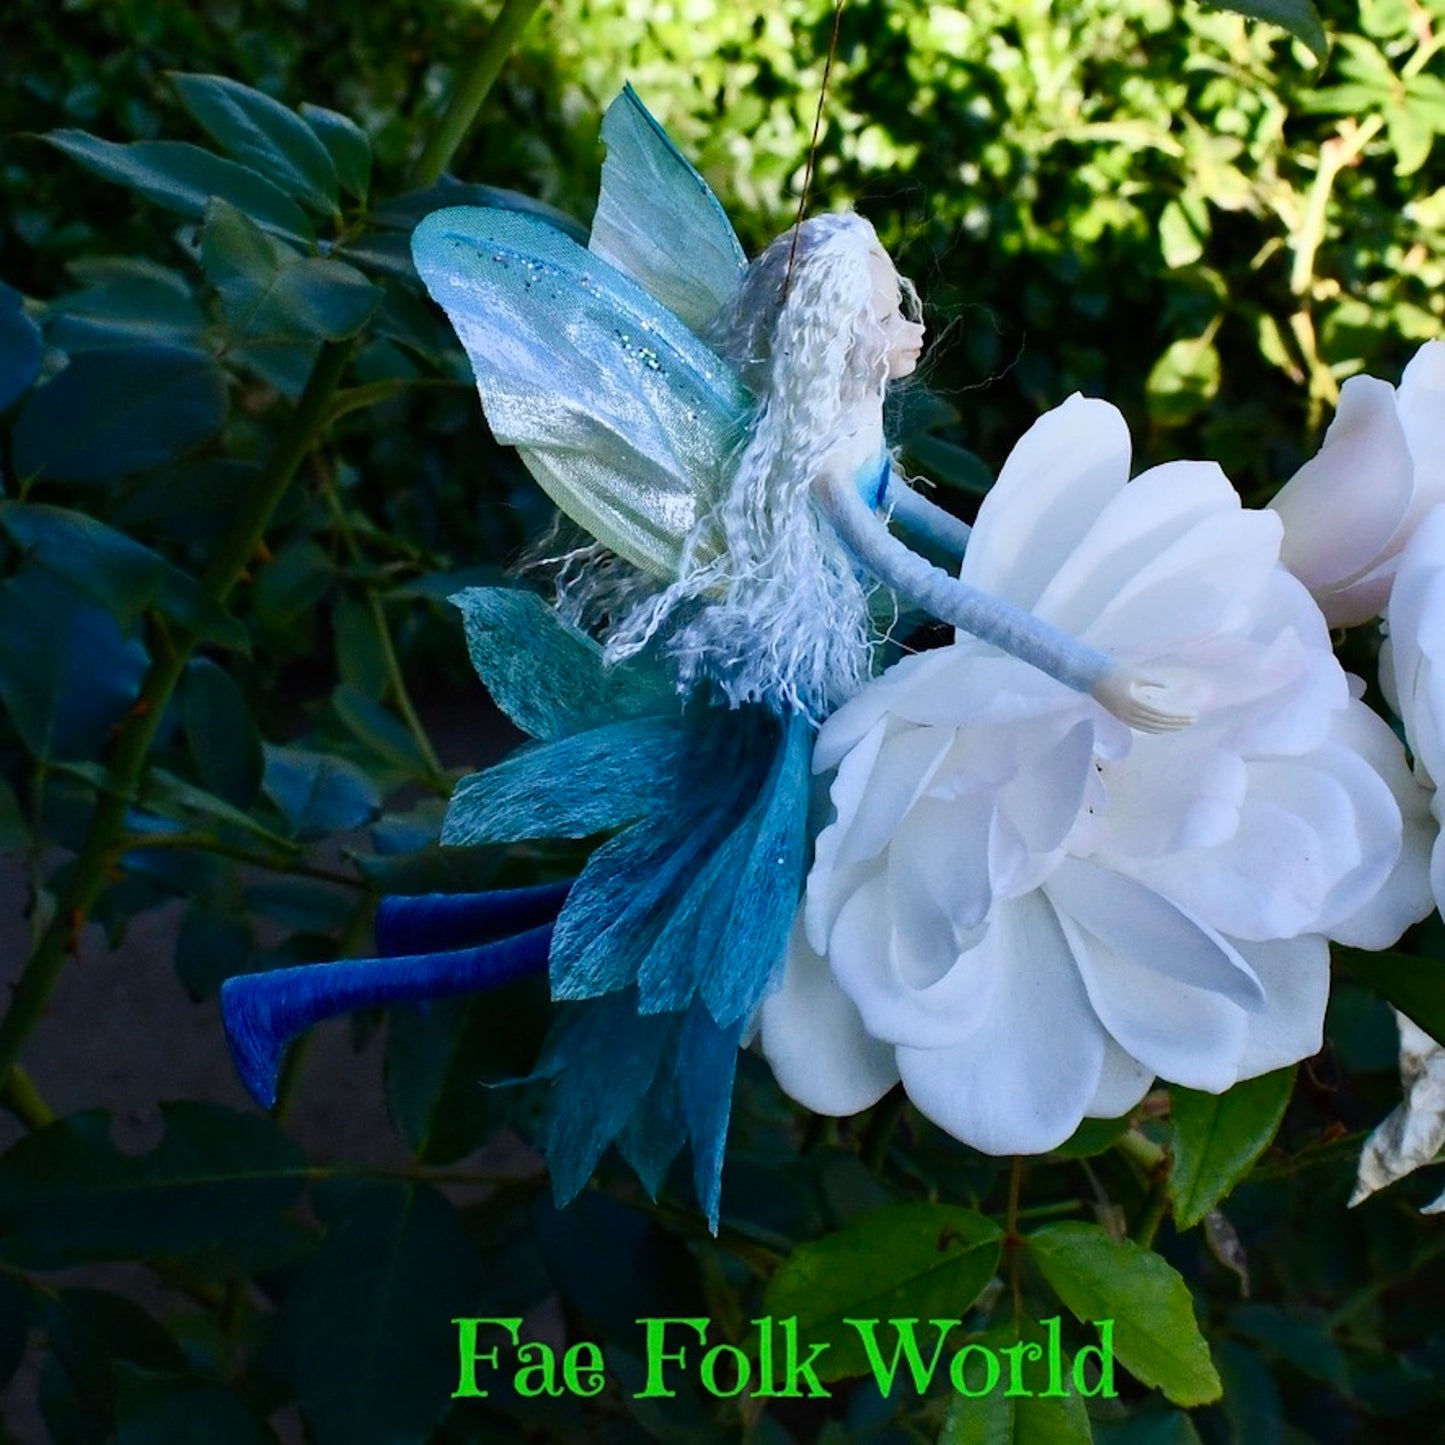 Fae Folk® Fairies - ELSA